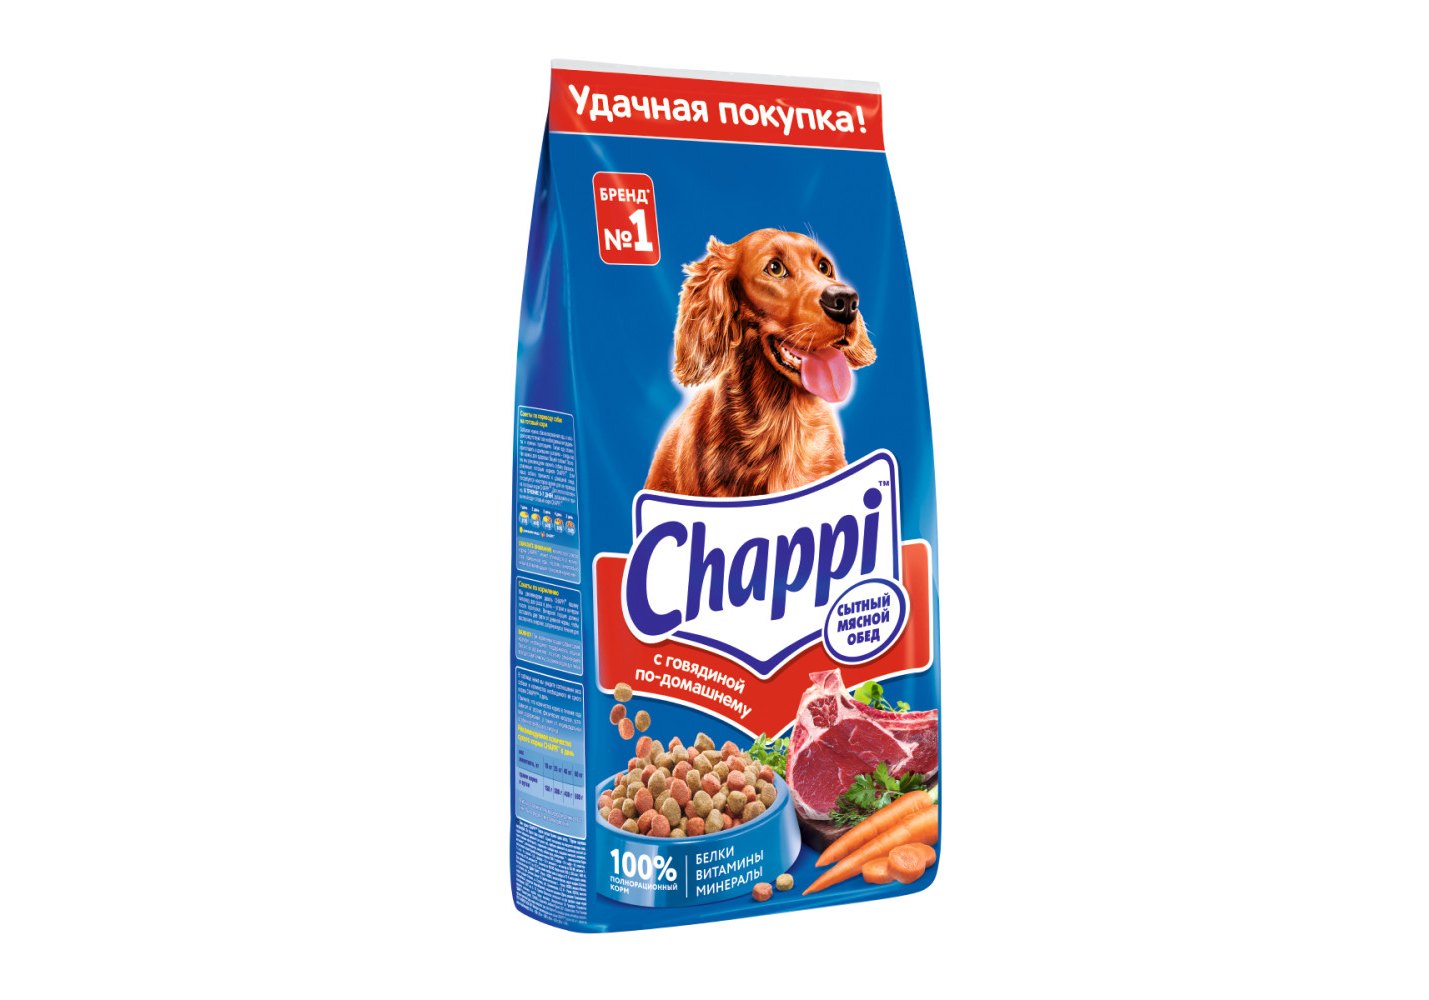 Chappi / Сухой корм Чаппи для собак Сытный мясной обед Говядина 15 кг  купить в Москве по низкой цене 2 610₽ | интернет-магазин ZooMag.ru